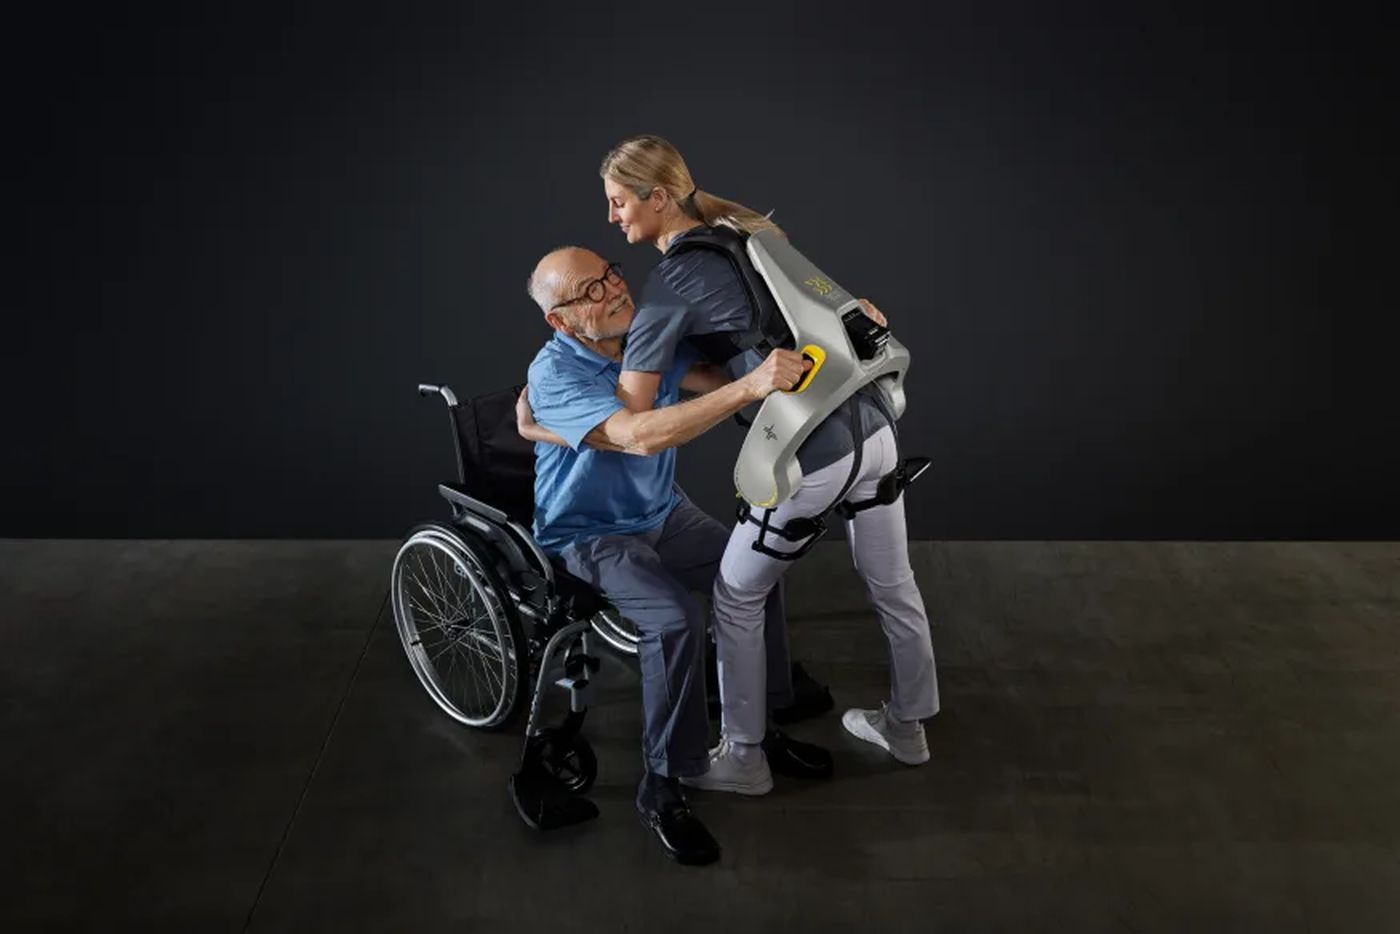 German Bionic dévoile l'Apogee+, un exosquelette destiné au levage des personnes à mobilité très réduite